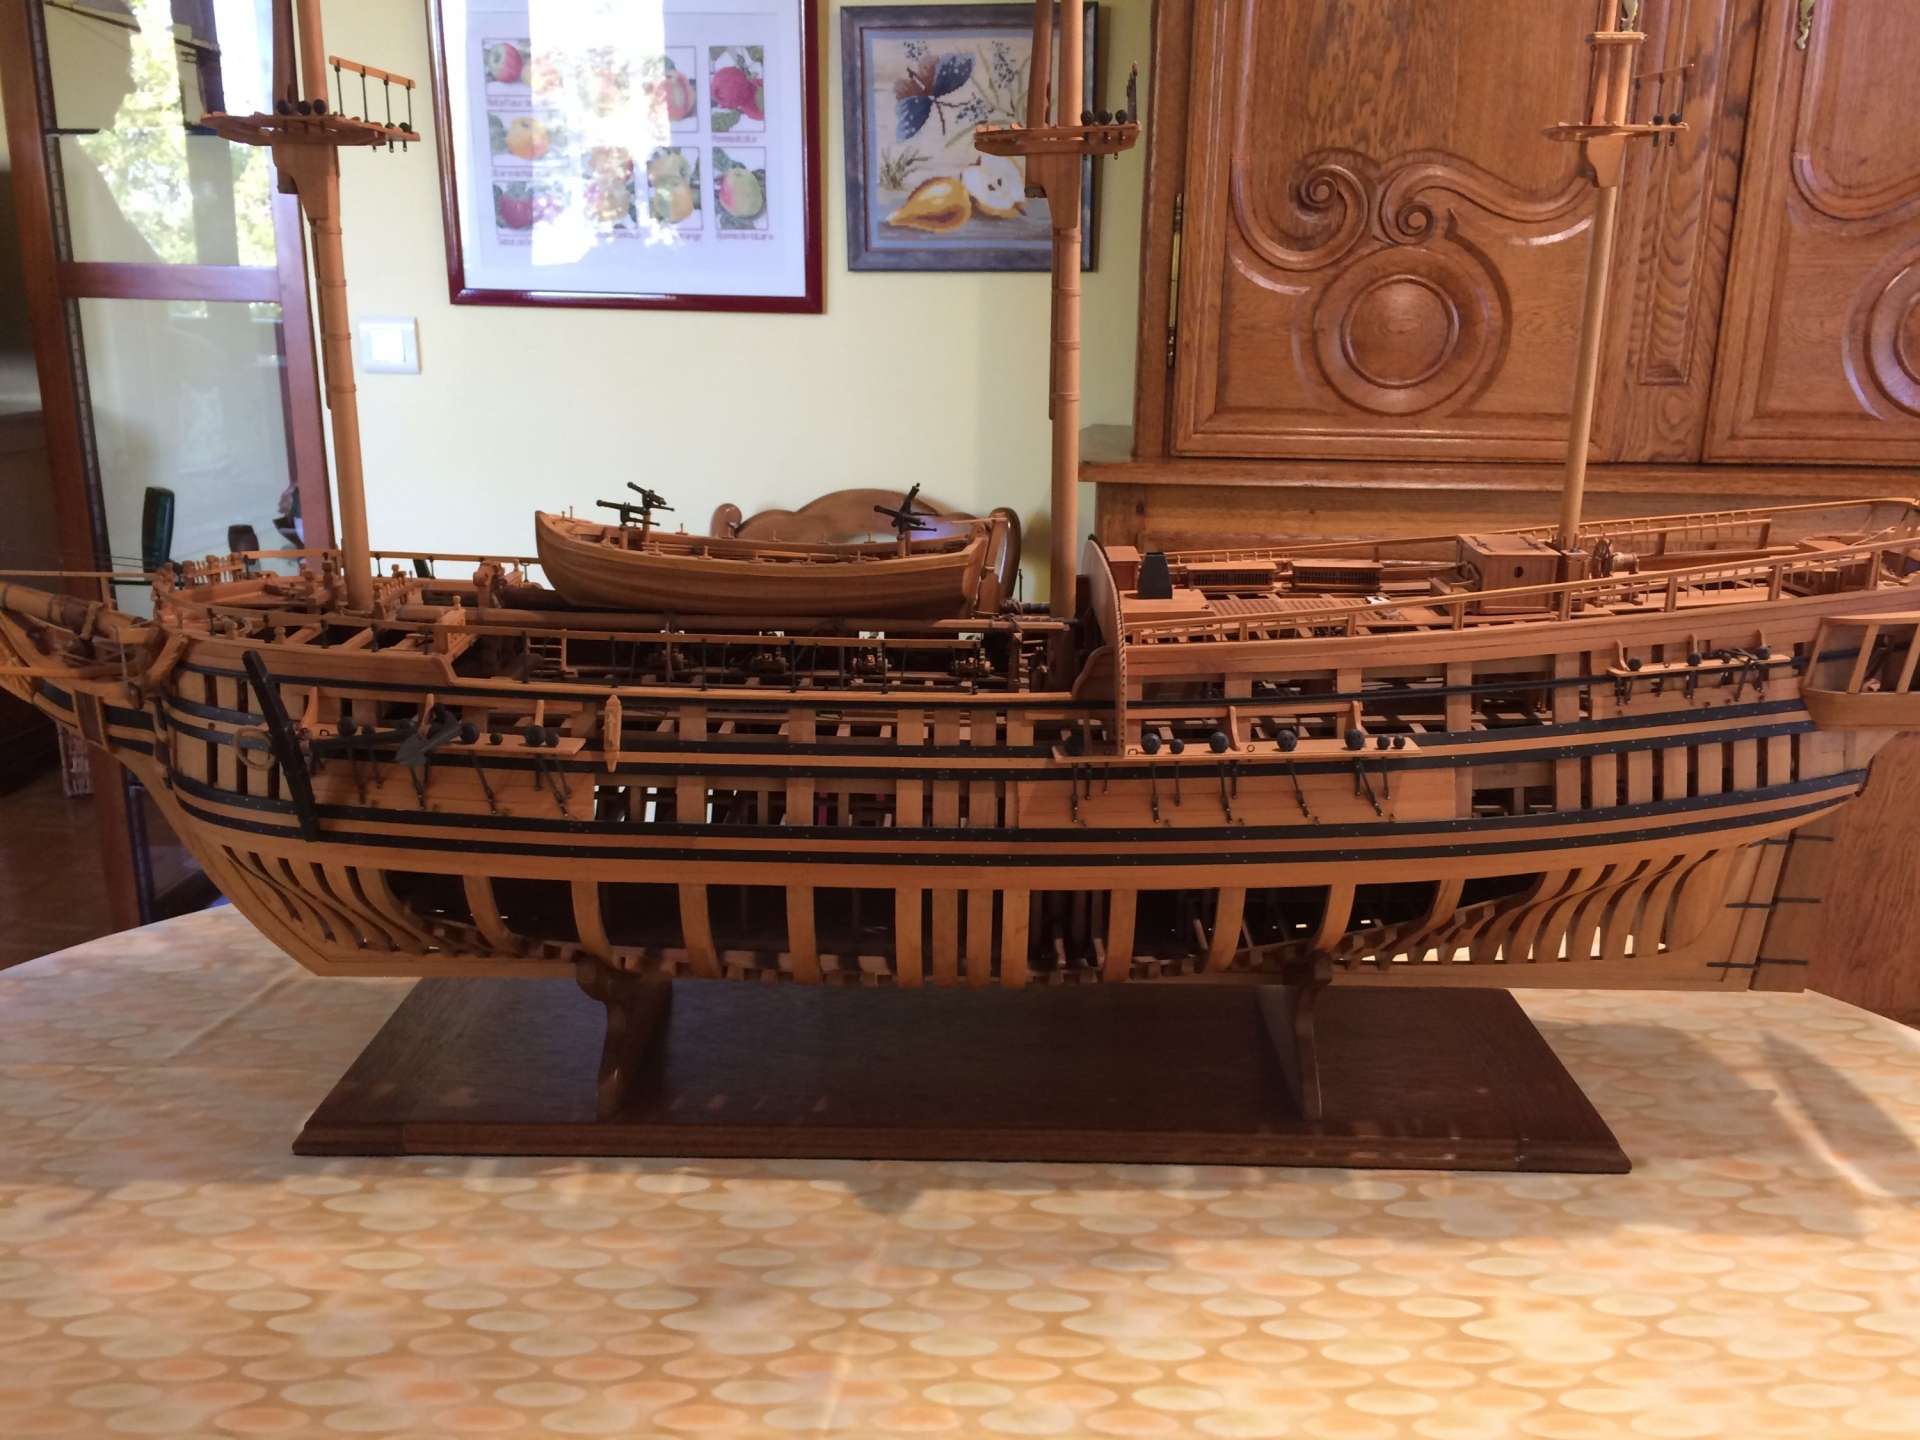 Maquette du navire l’Aurore, navire utilisé pour la traite transatlantique des personnes réduites en esclavage à la fin du XVIIIe s, d’après J. Baudriot